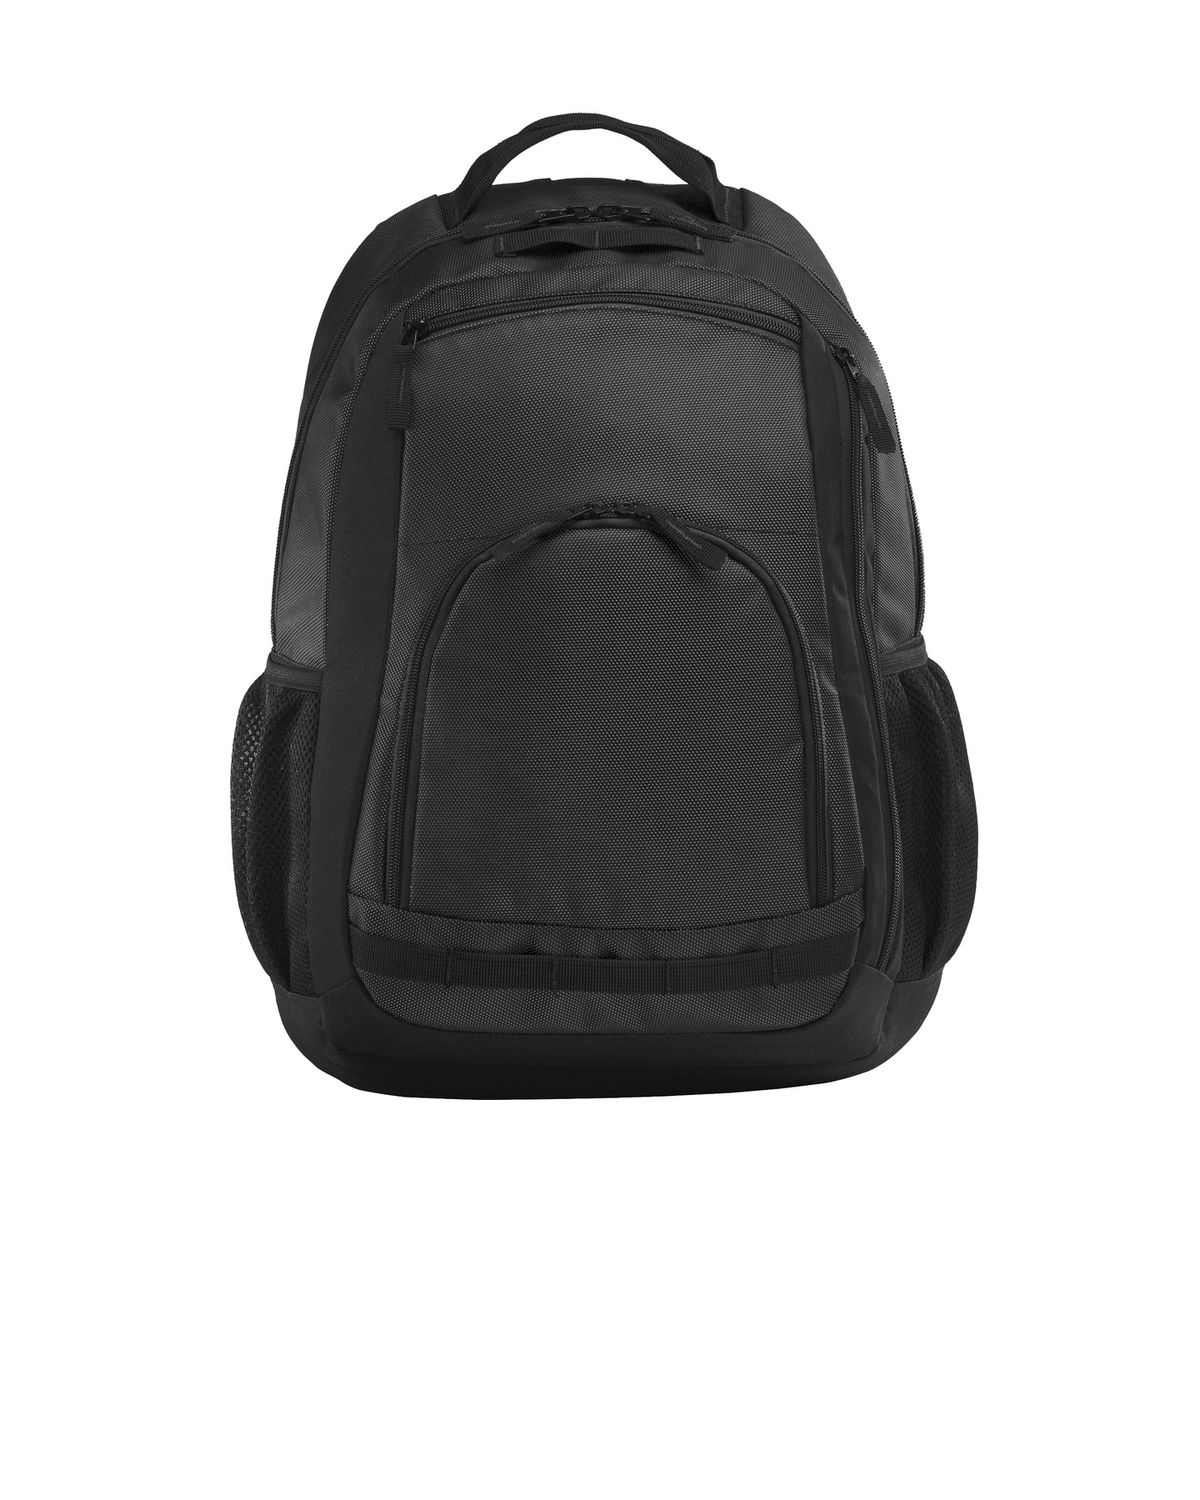 'Port Authority BG207 Xtreme Backpack'